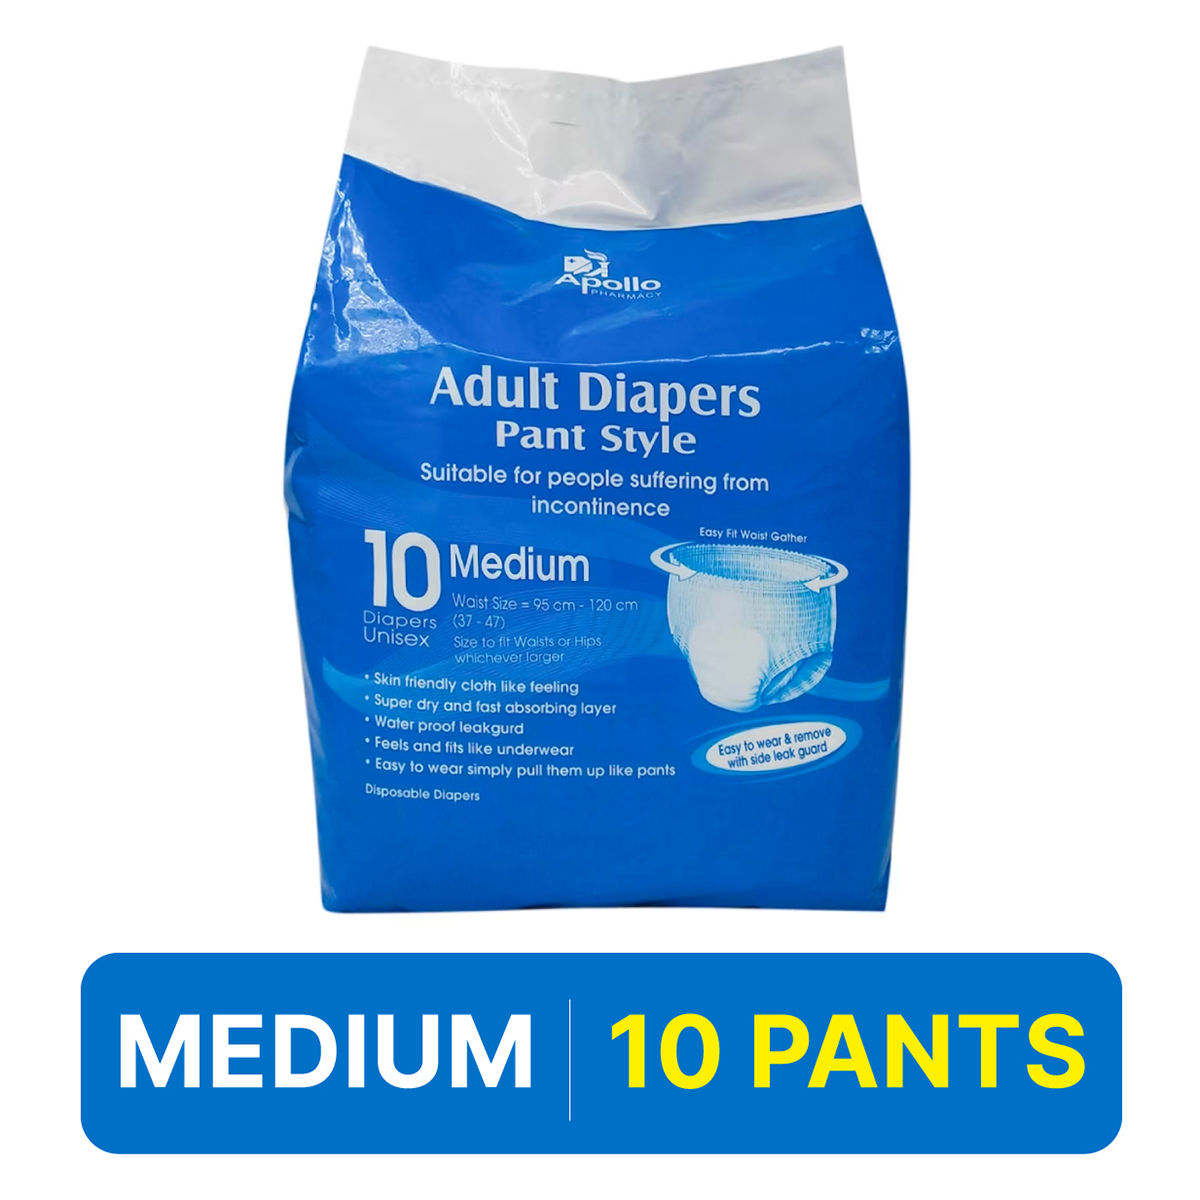 Buy Apollo Pharmacy Adult Diaper Pants Medium, 10 Count Online